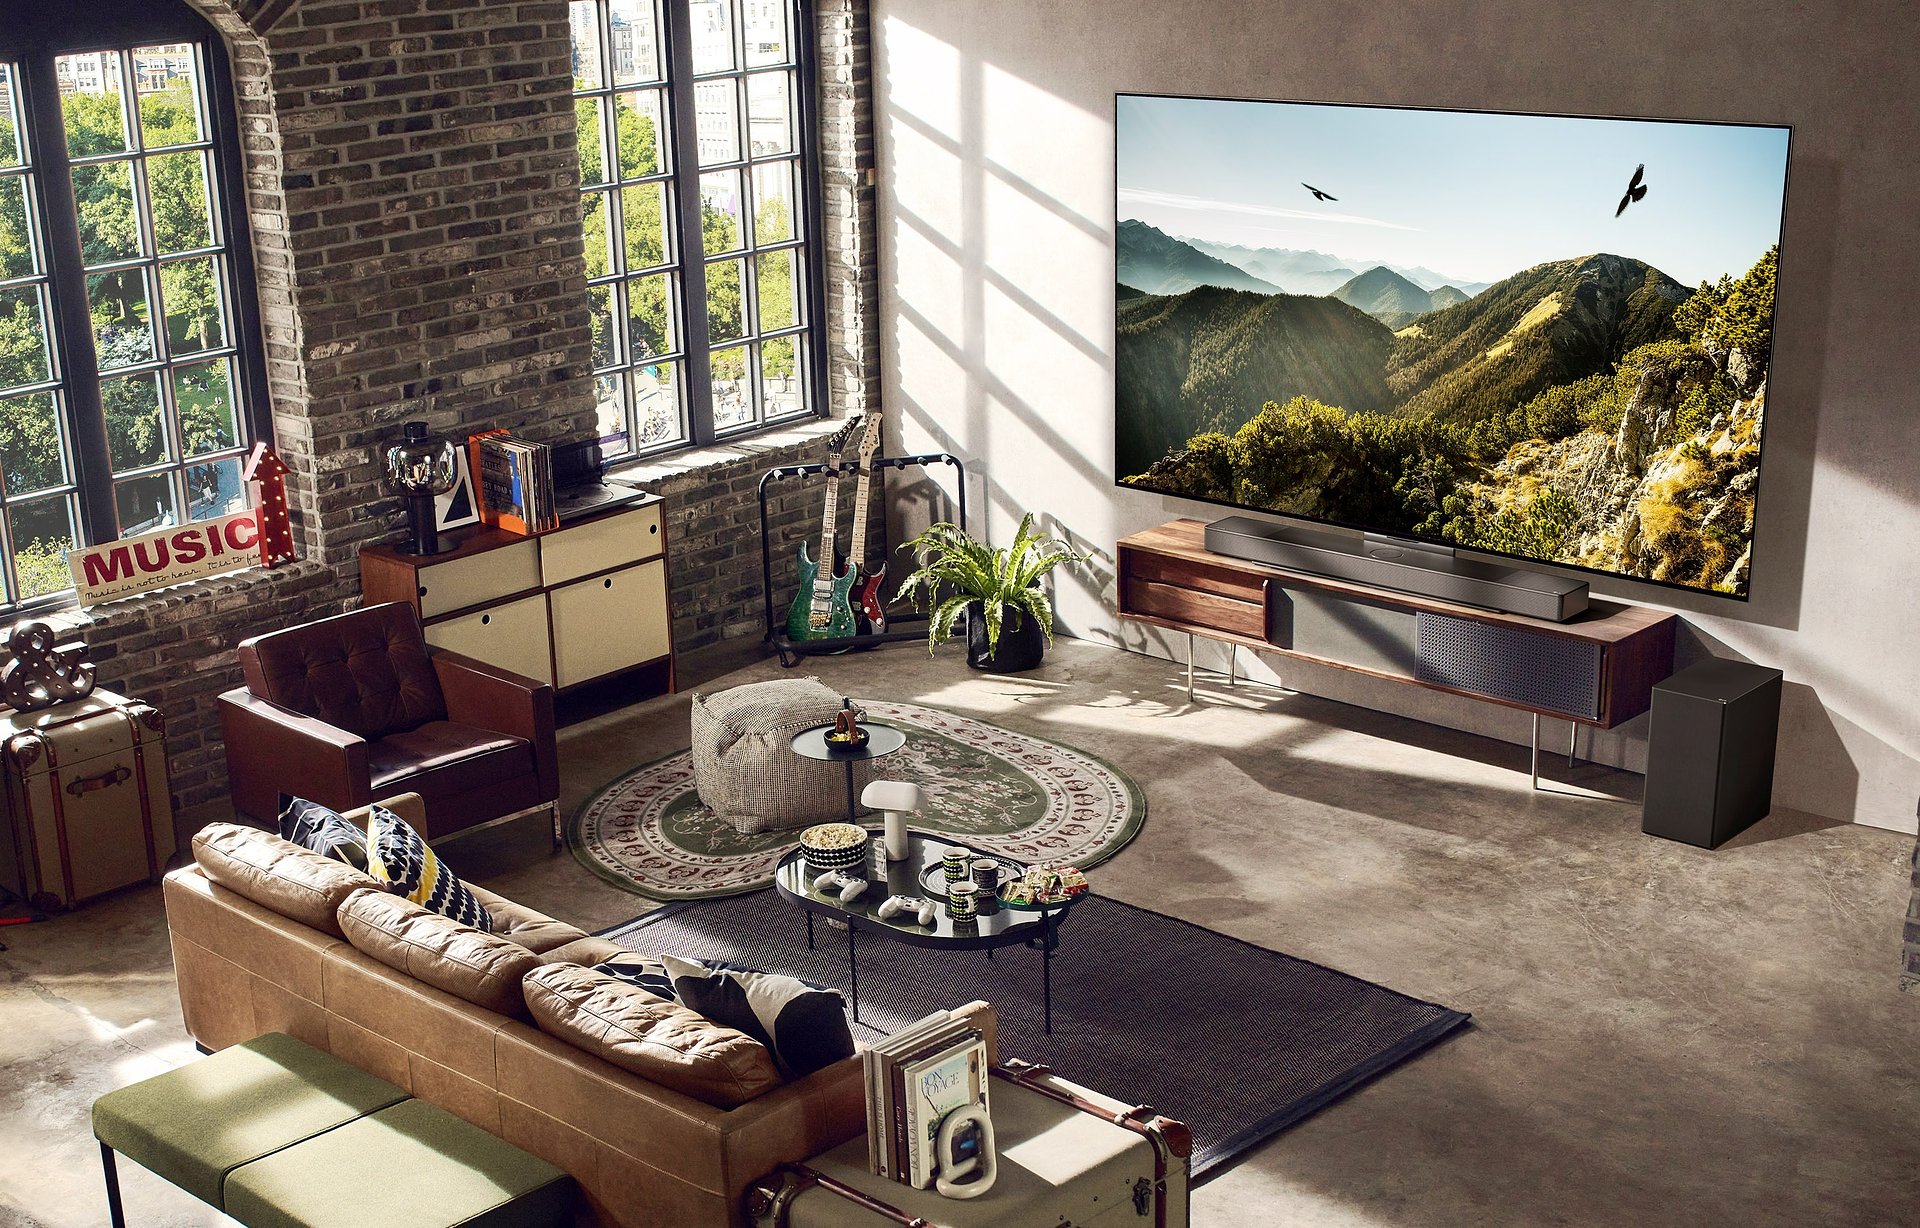 Telewizory LG OLED evo 2023 zostały docenione za projekt zgodny z koncepcją zrównoważonego rozwoju